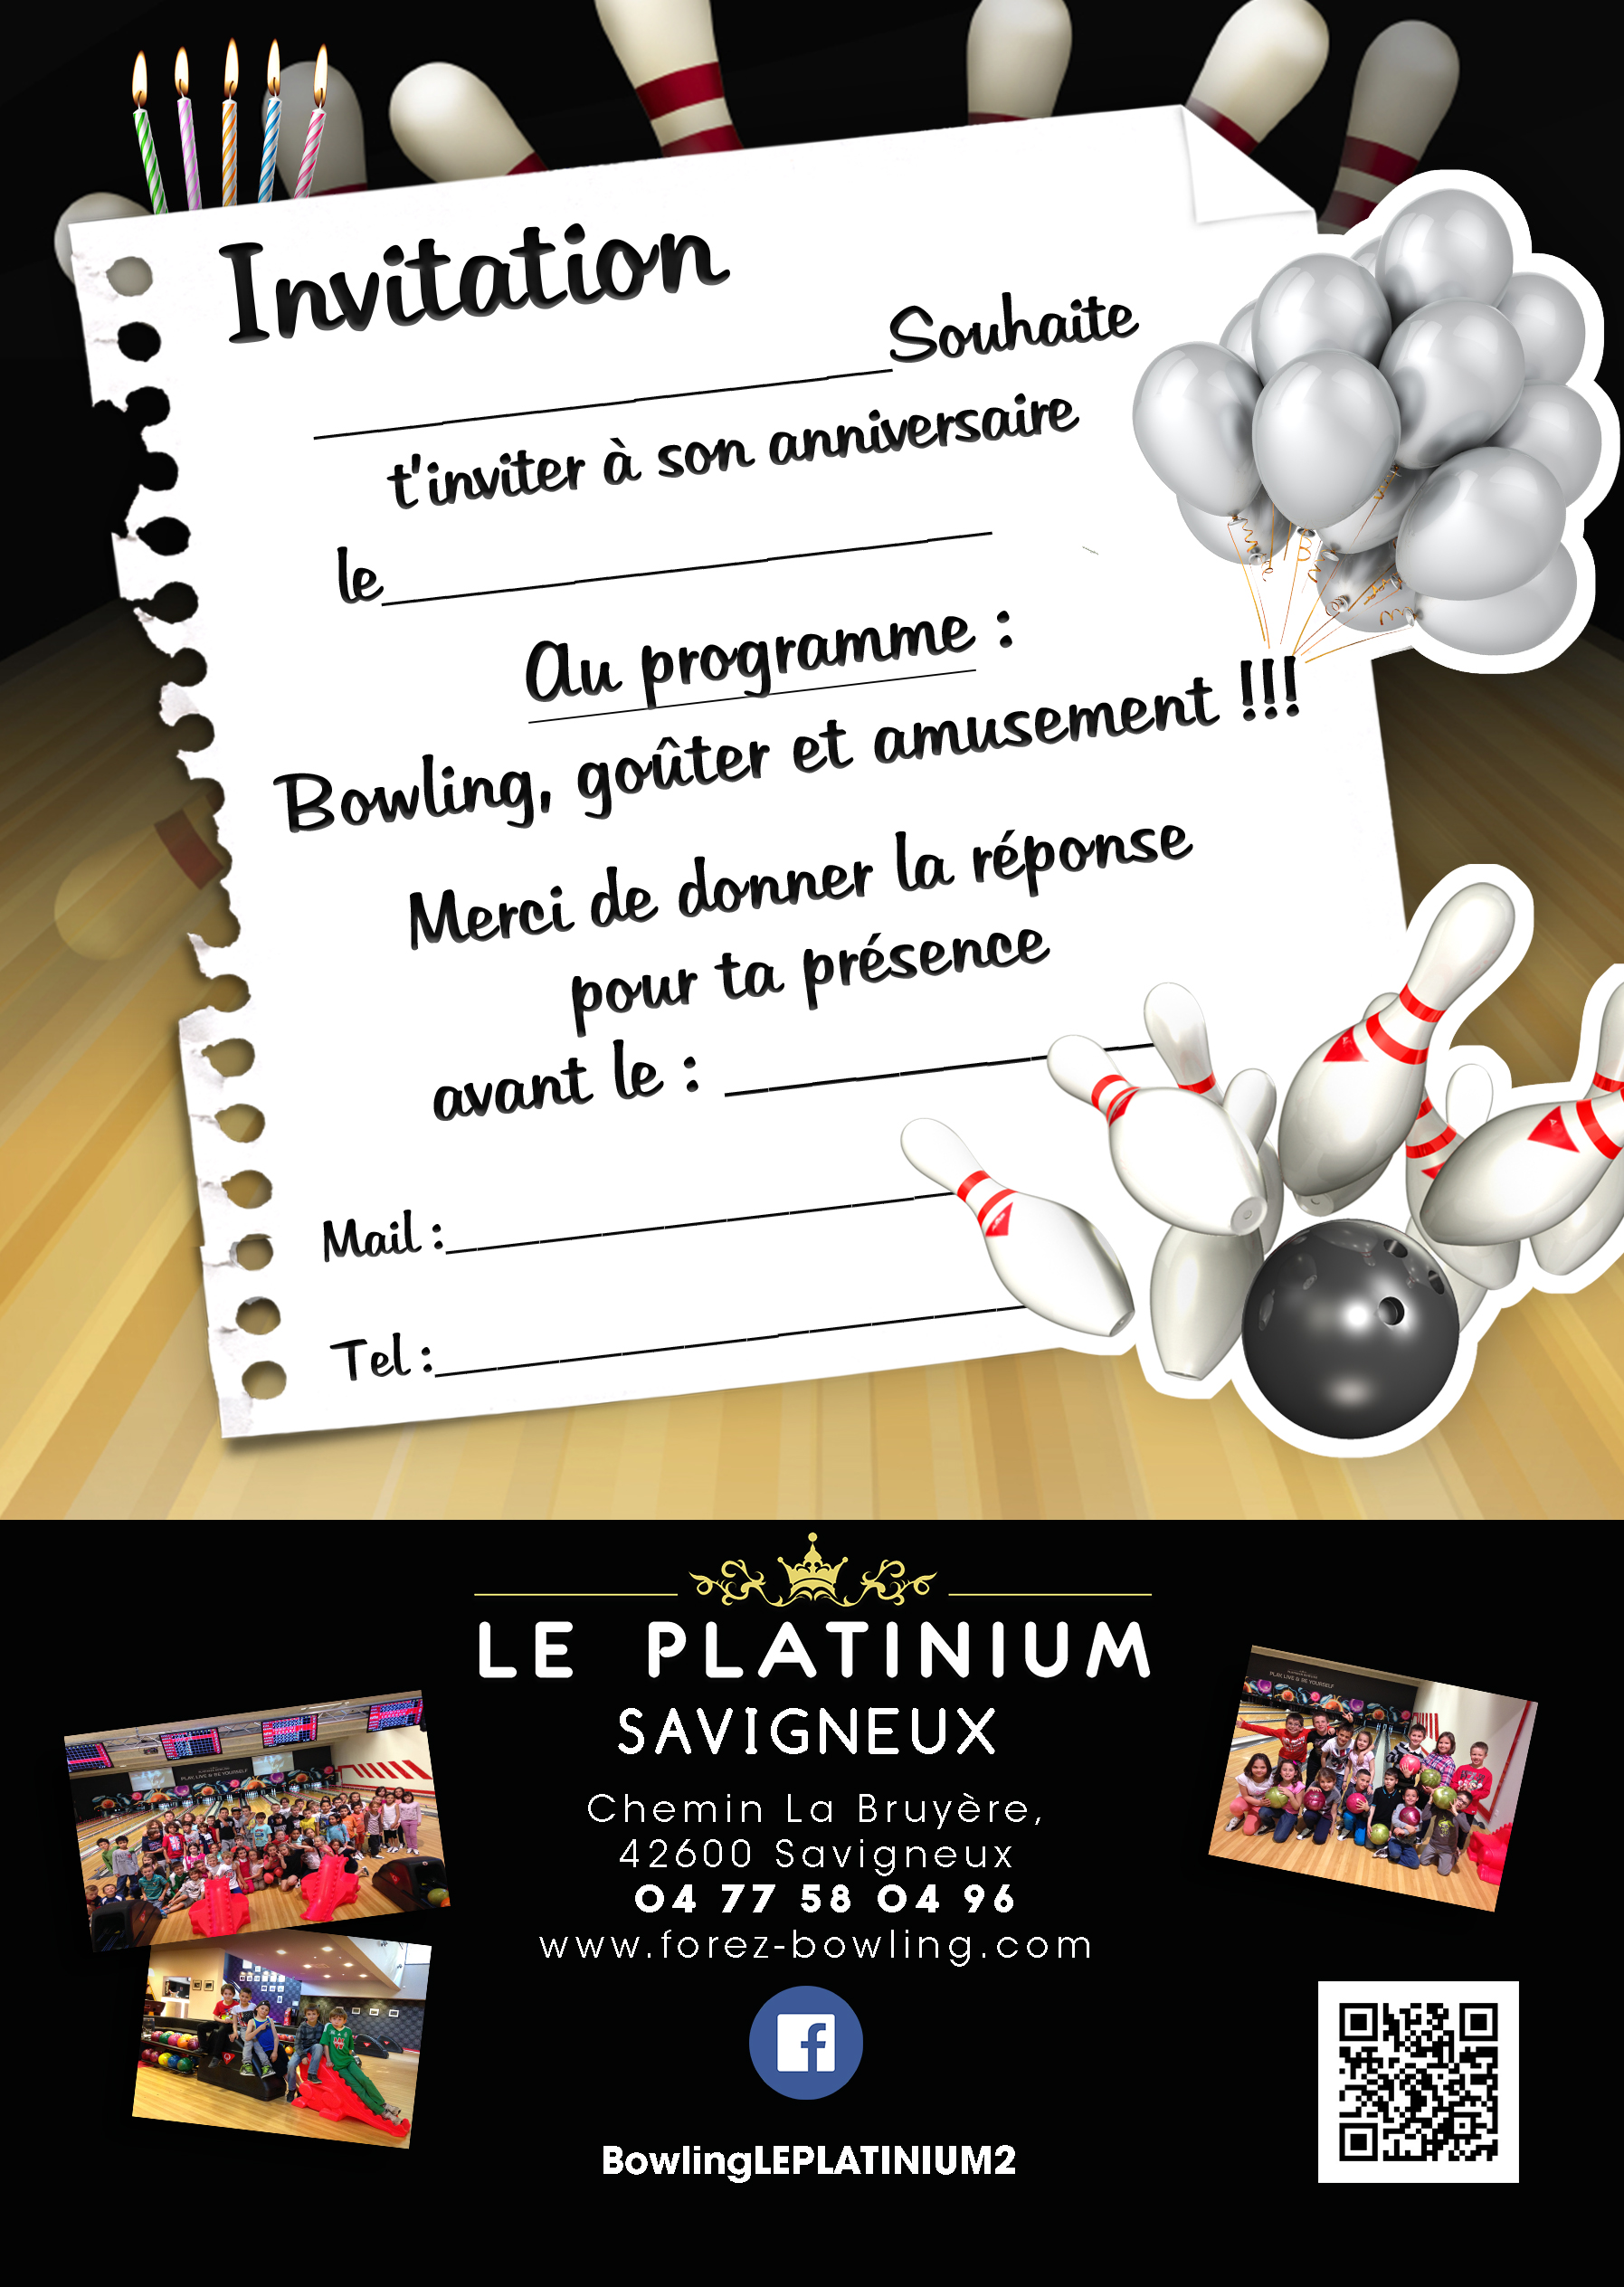 Le Platinium Bowling Squash A Savigneux Dans La Loire 42